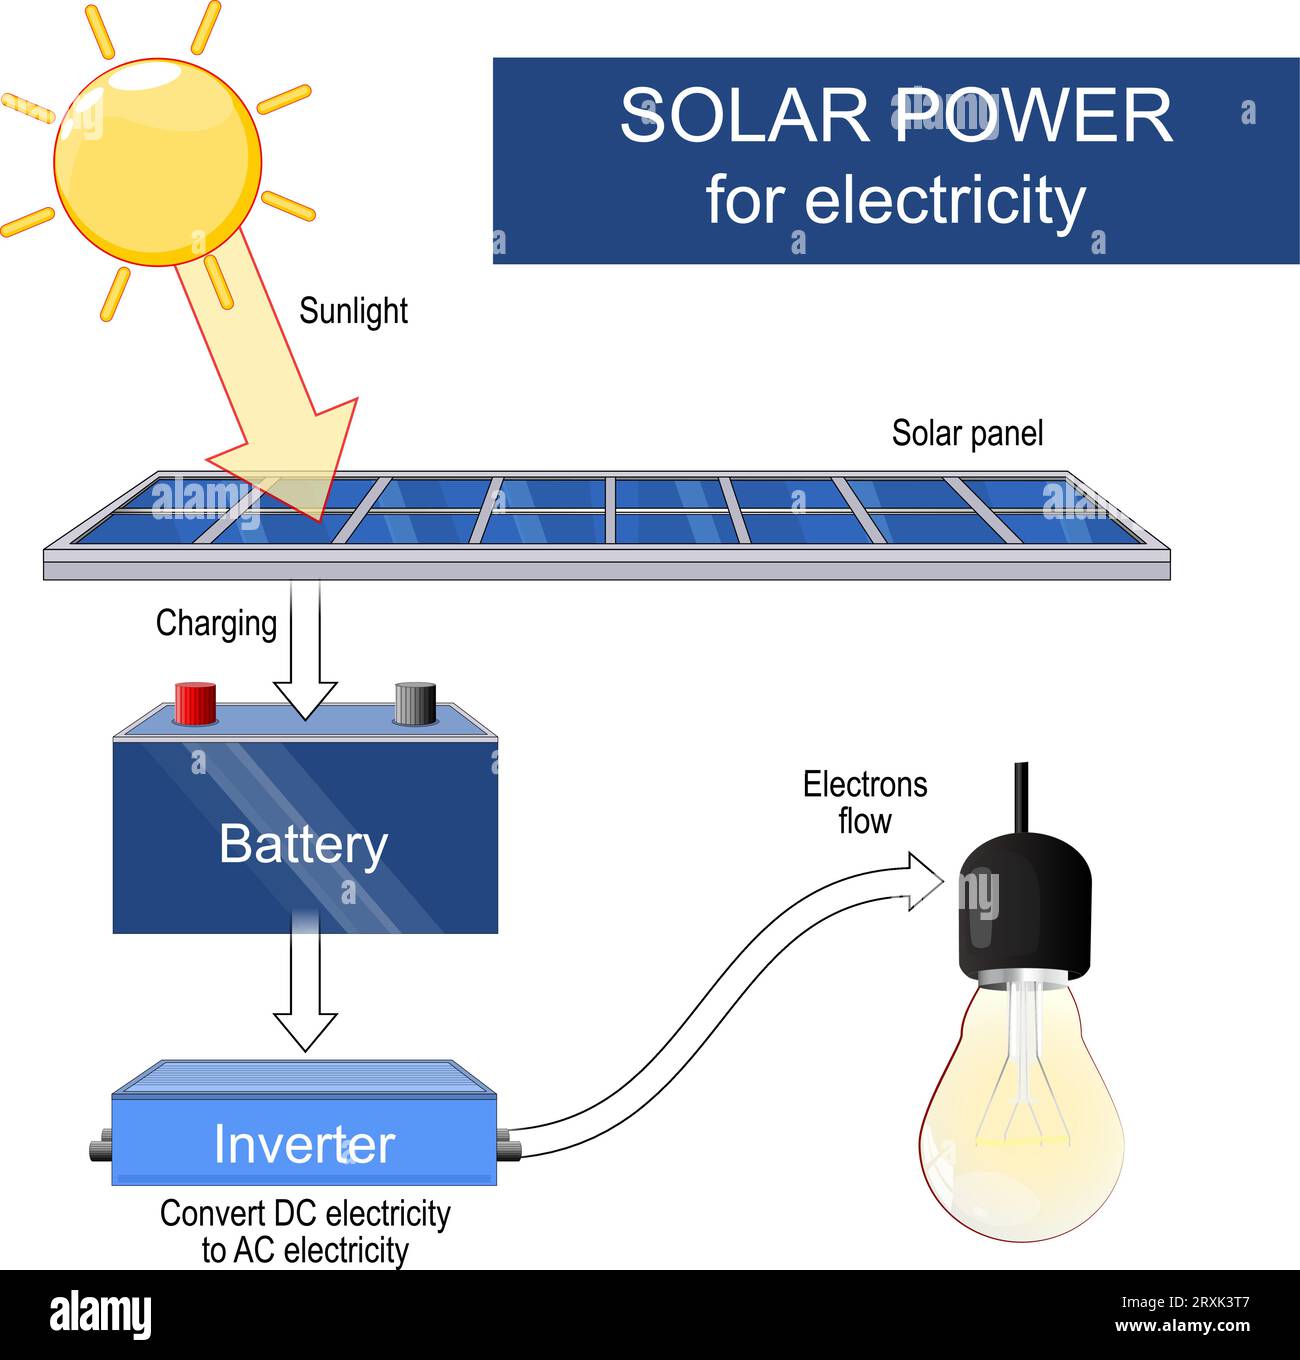 energia solare. Un pannello solare converte la luce solare in elettricità. catena di conversione della luce solare utilizzando un pannello solare, una batteria, un inverter in una lampadina Illustrazione Vettoriale